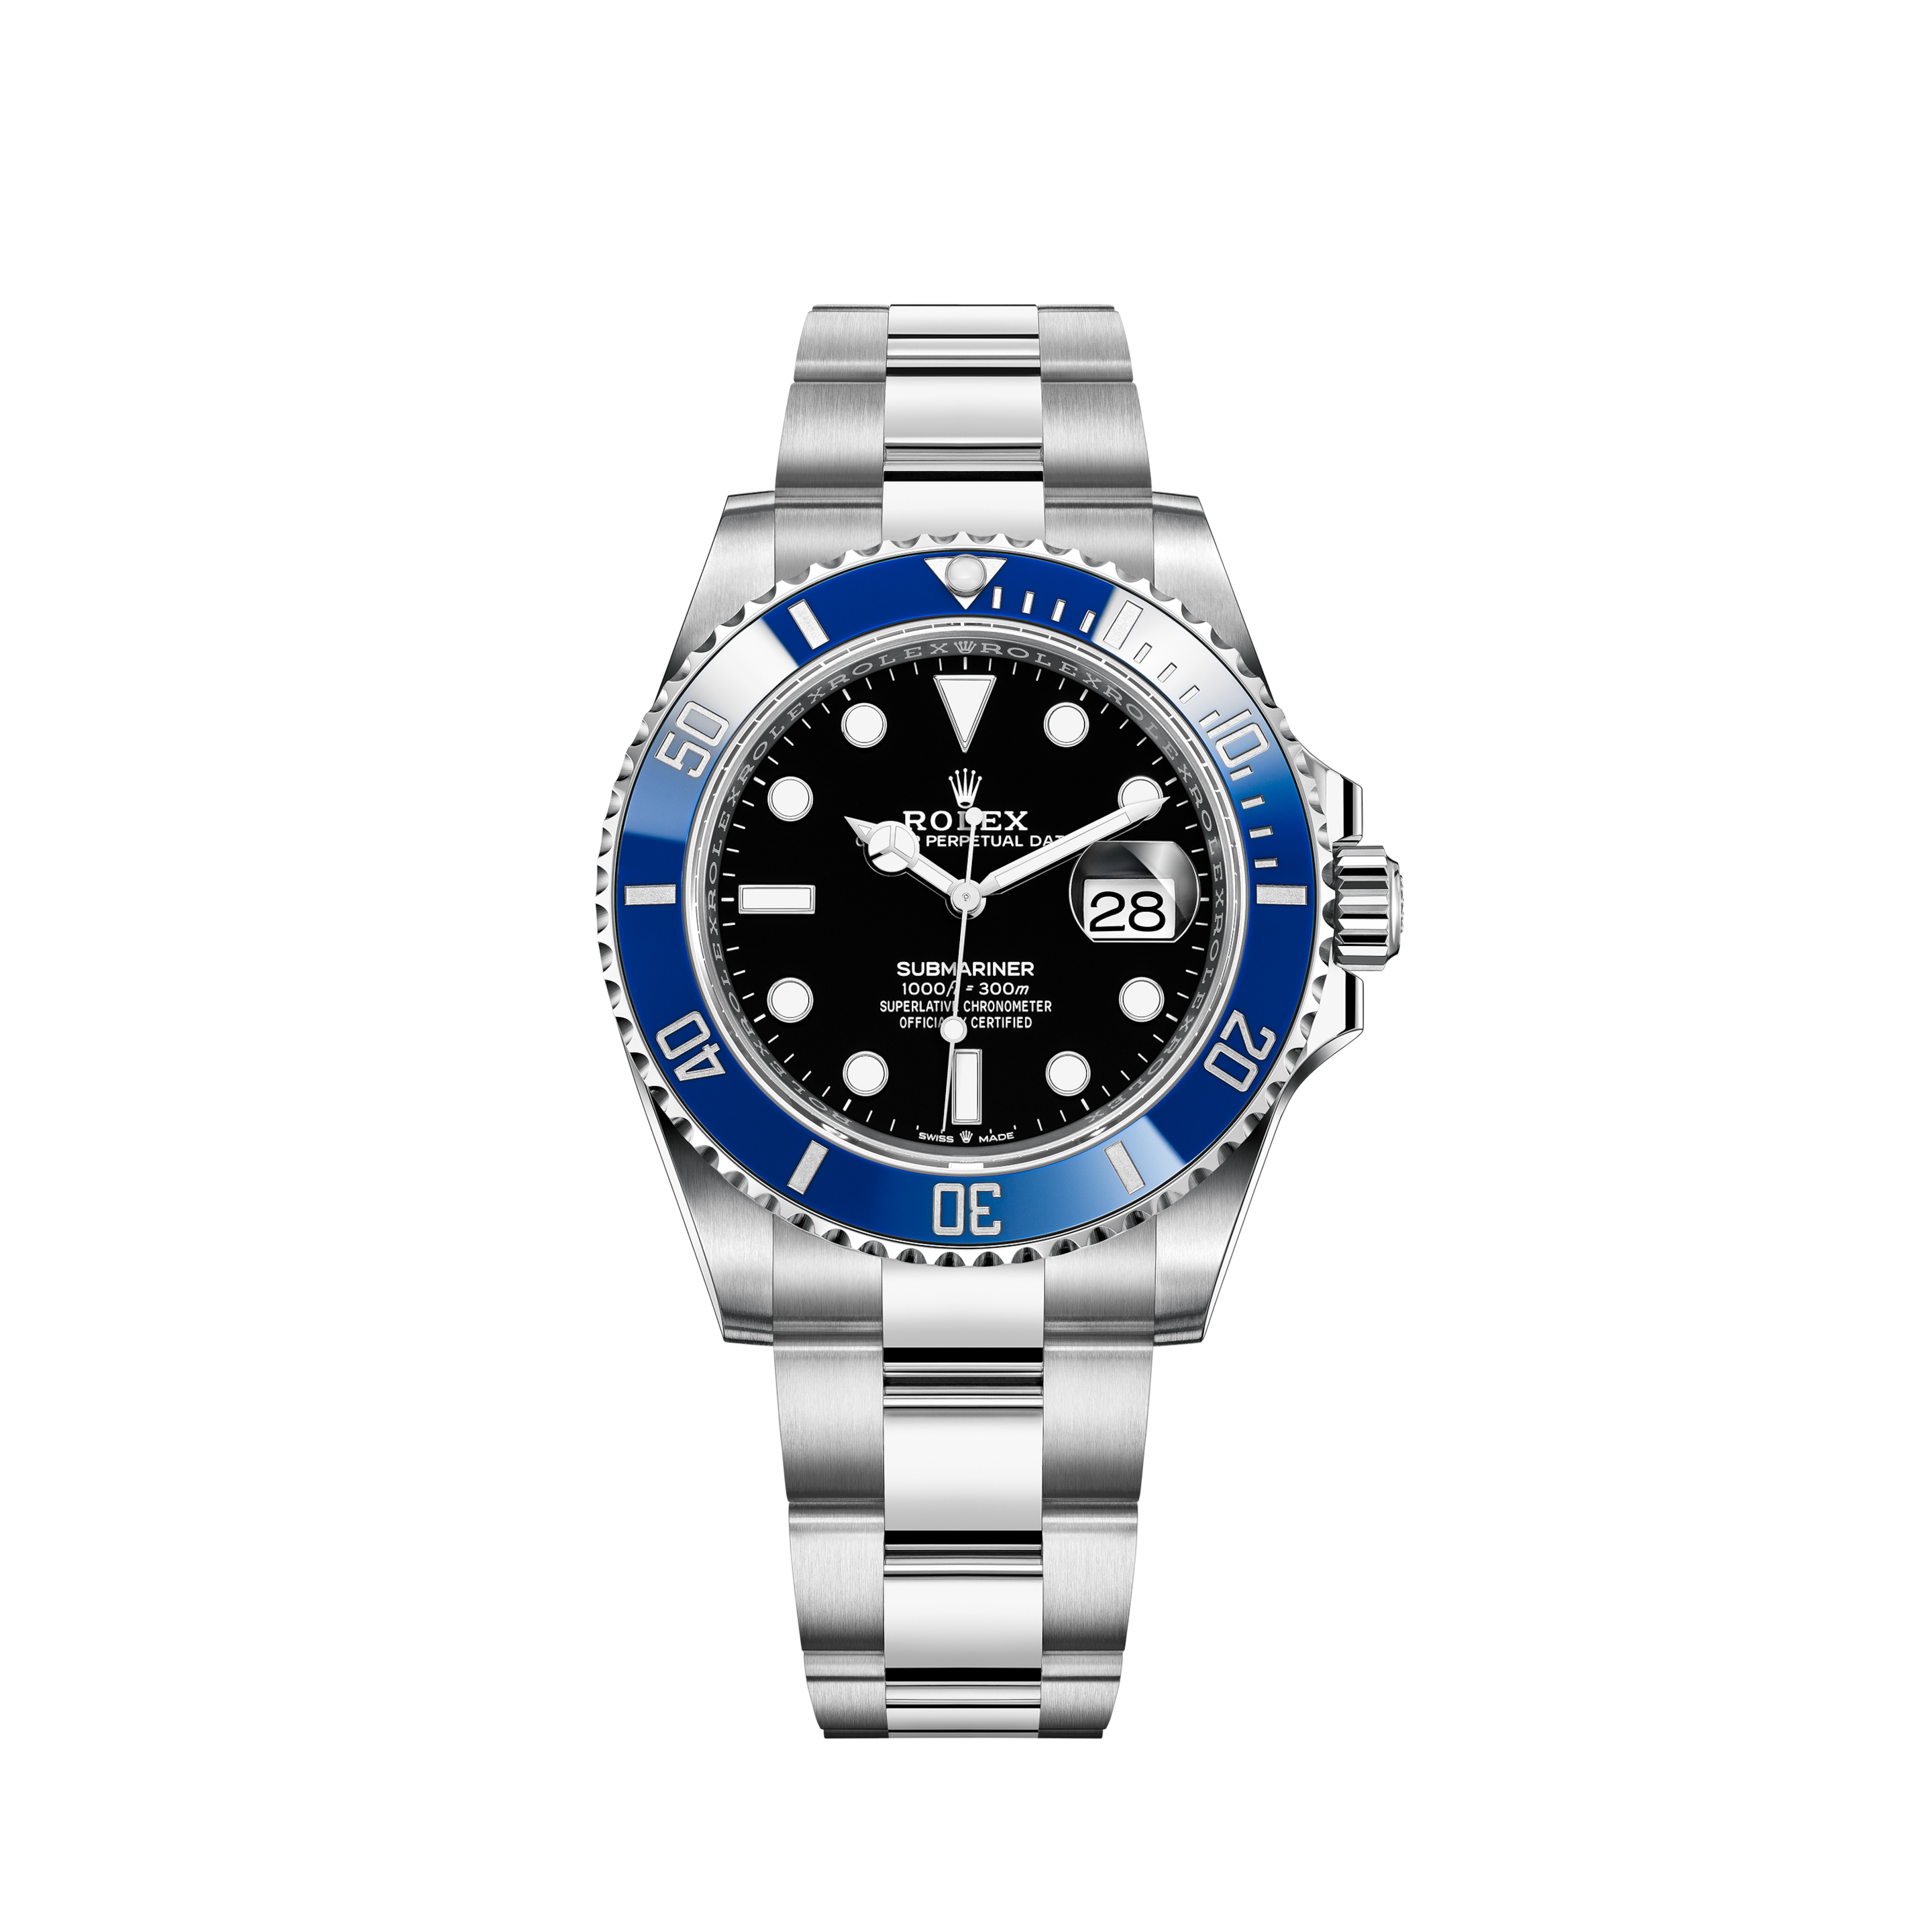 Rolex Submariner Date Watch: 18 ct 